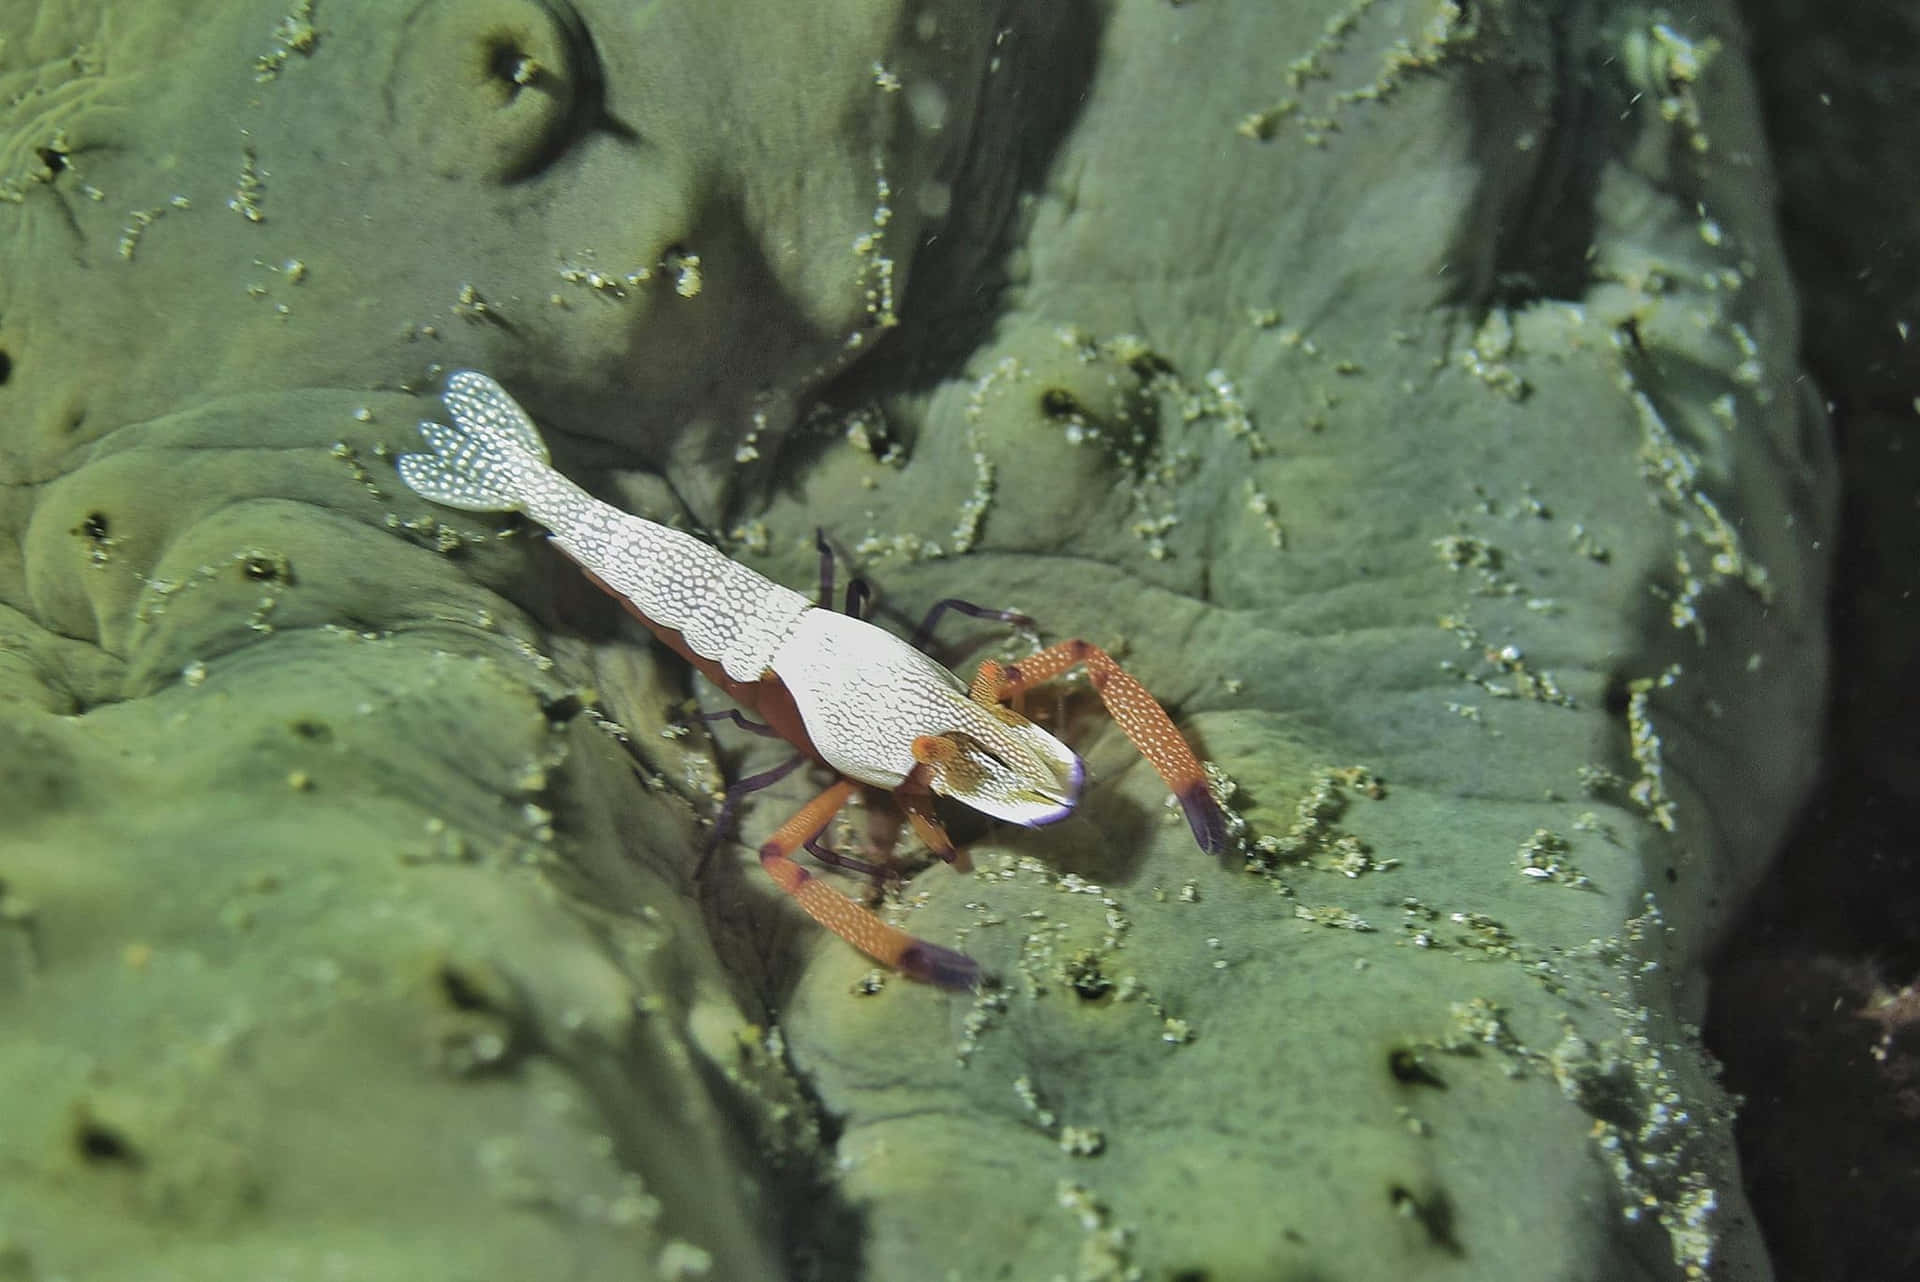 Emperor Shrimp On Sea Cucumber.jpg Wallpaper